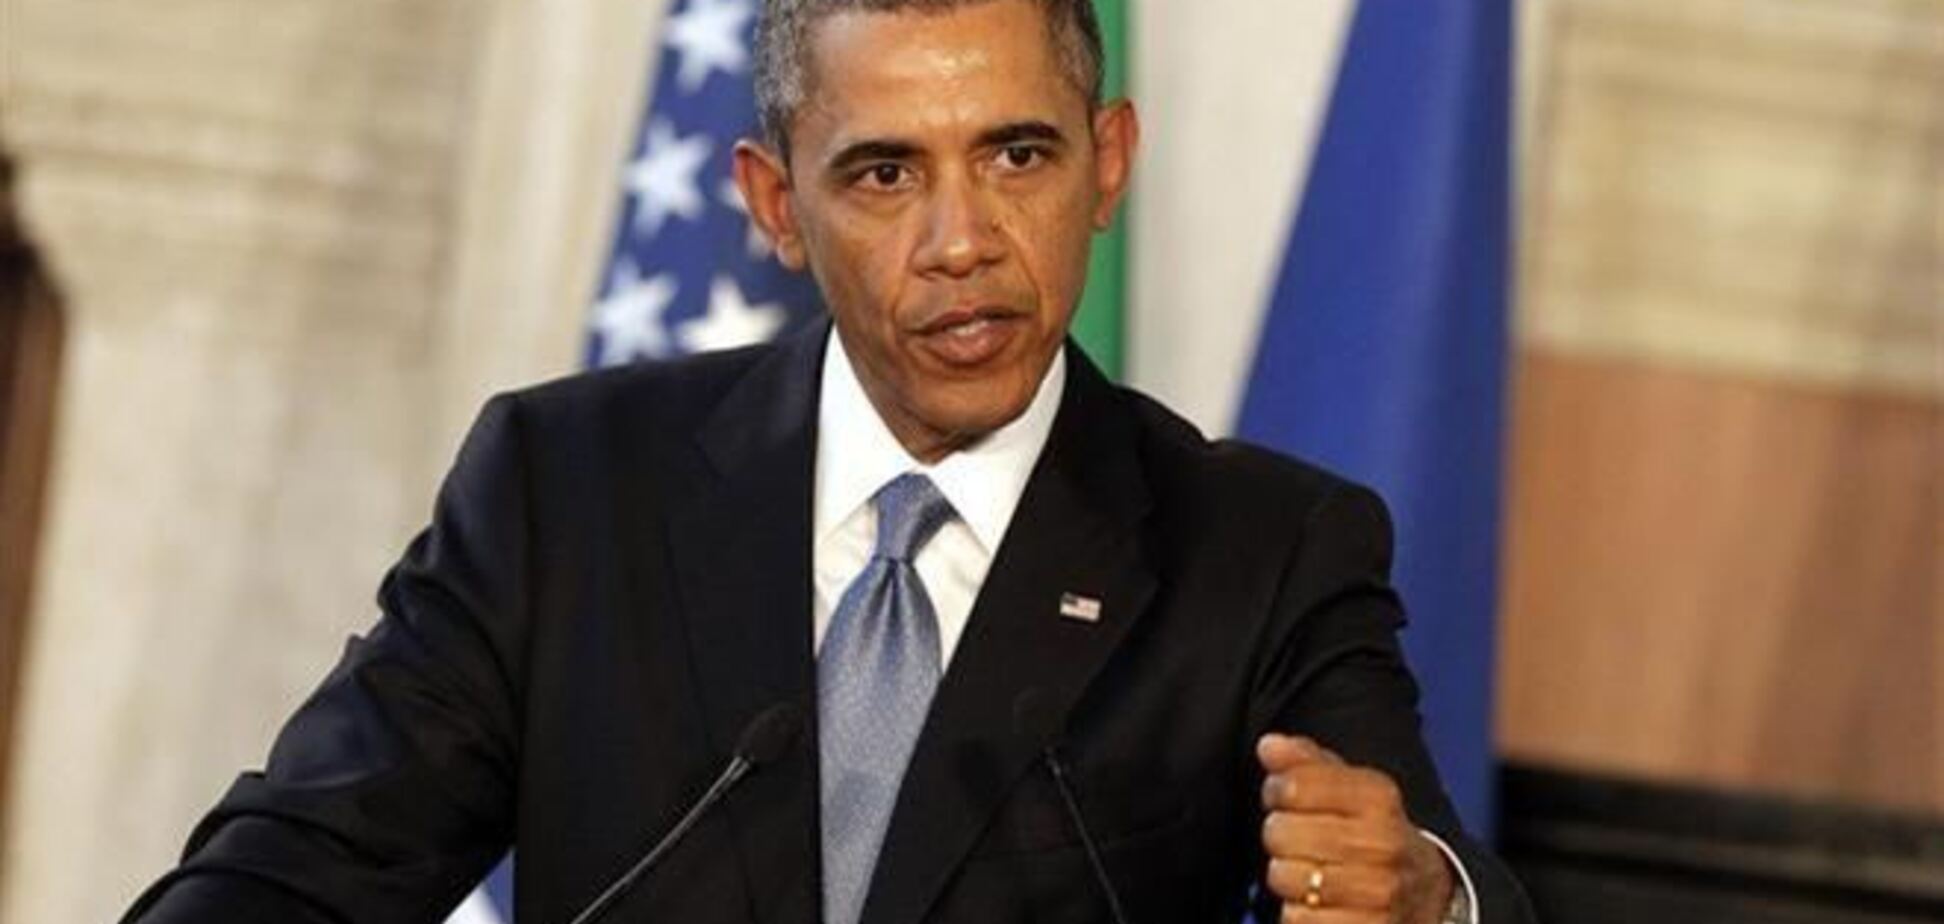 Обама поддержал санкции против РФ и финансовую помощь Украине